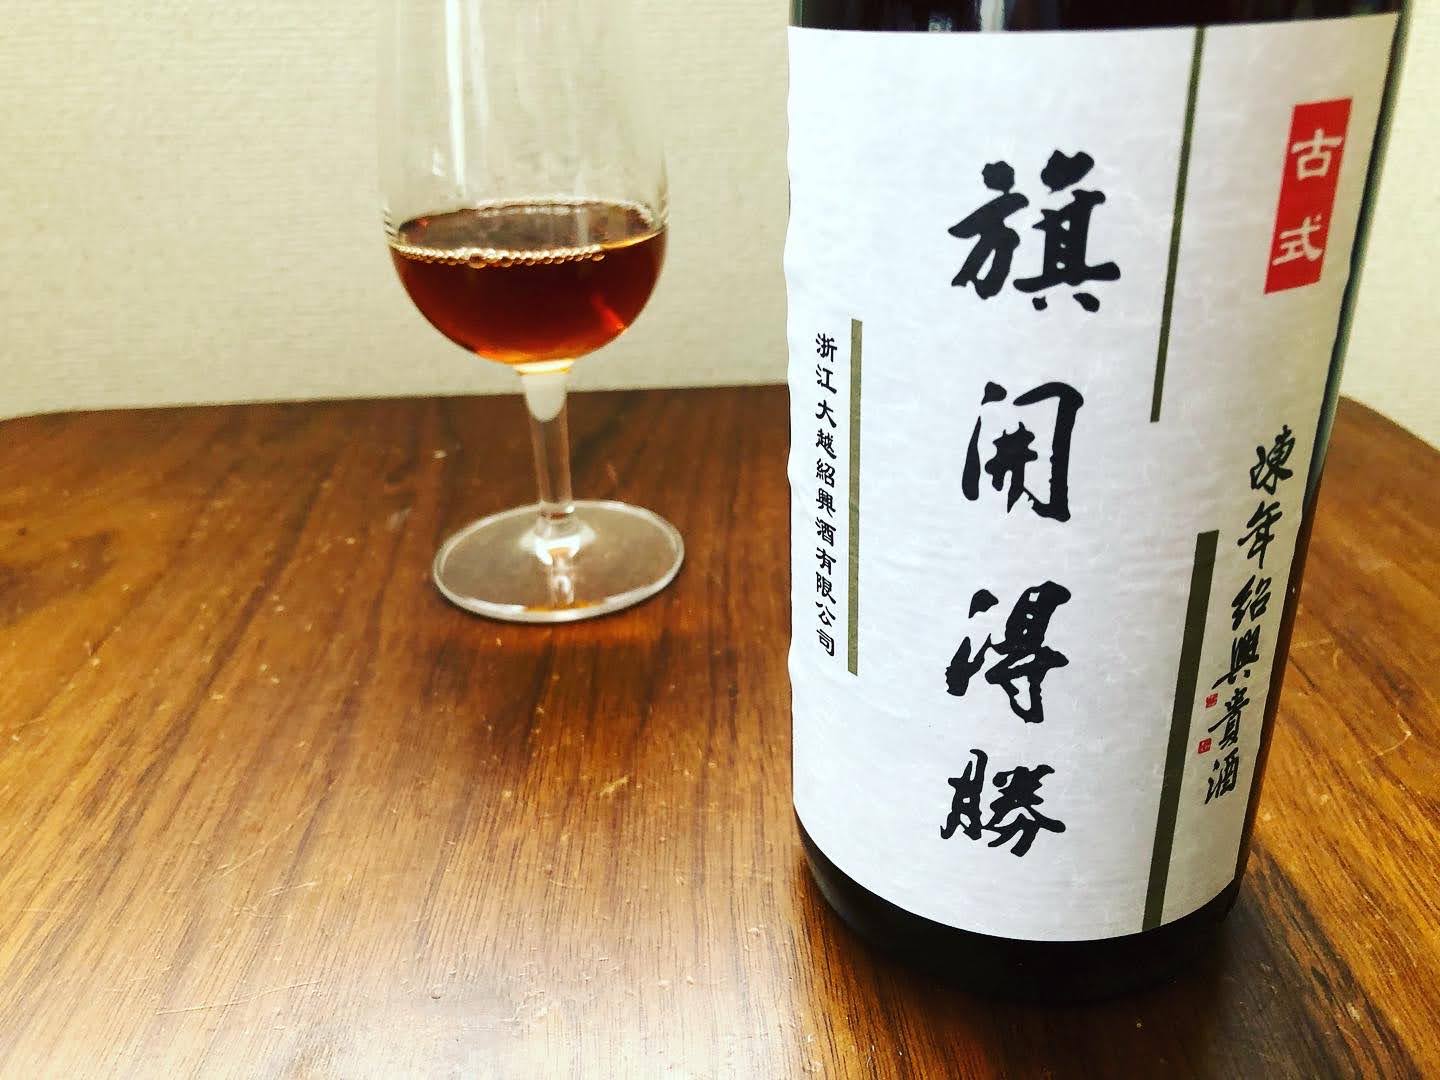 日本で買える紹興酒「紹興大越貴酒5年」の写真3枚目です。